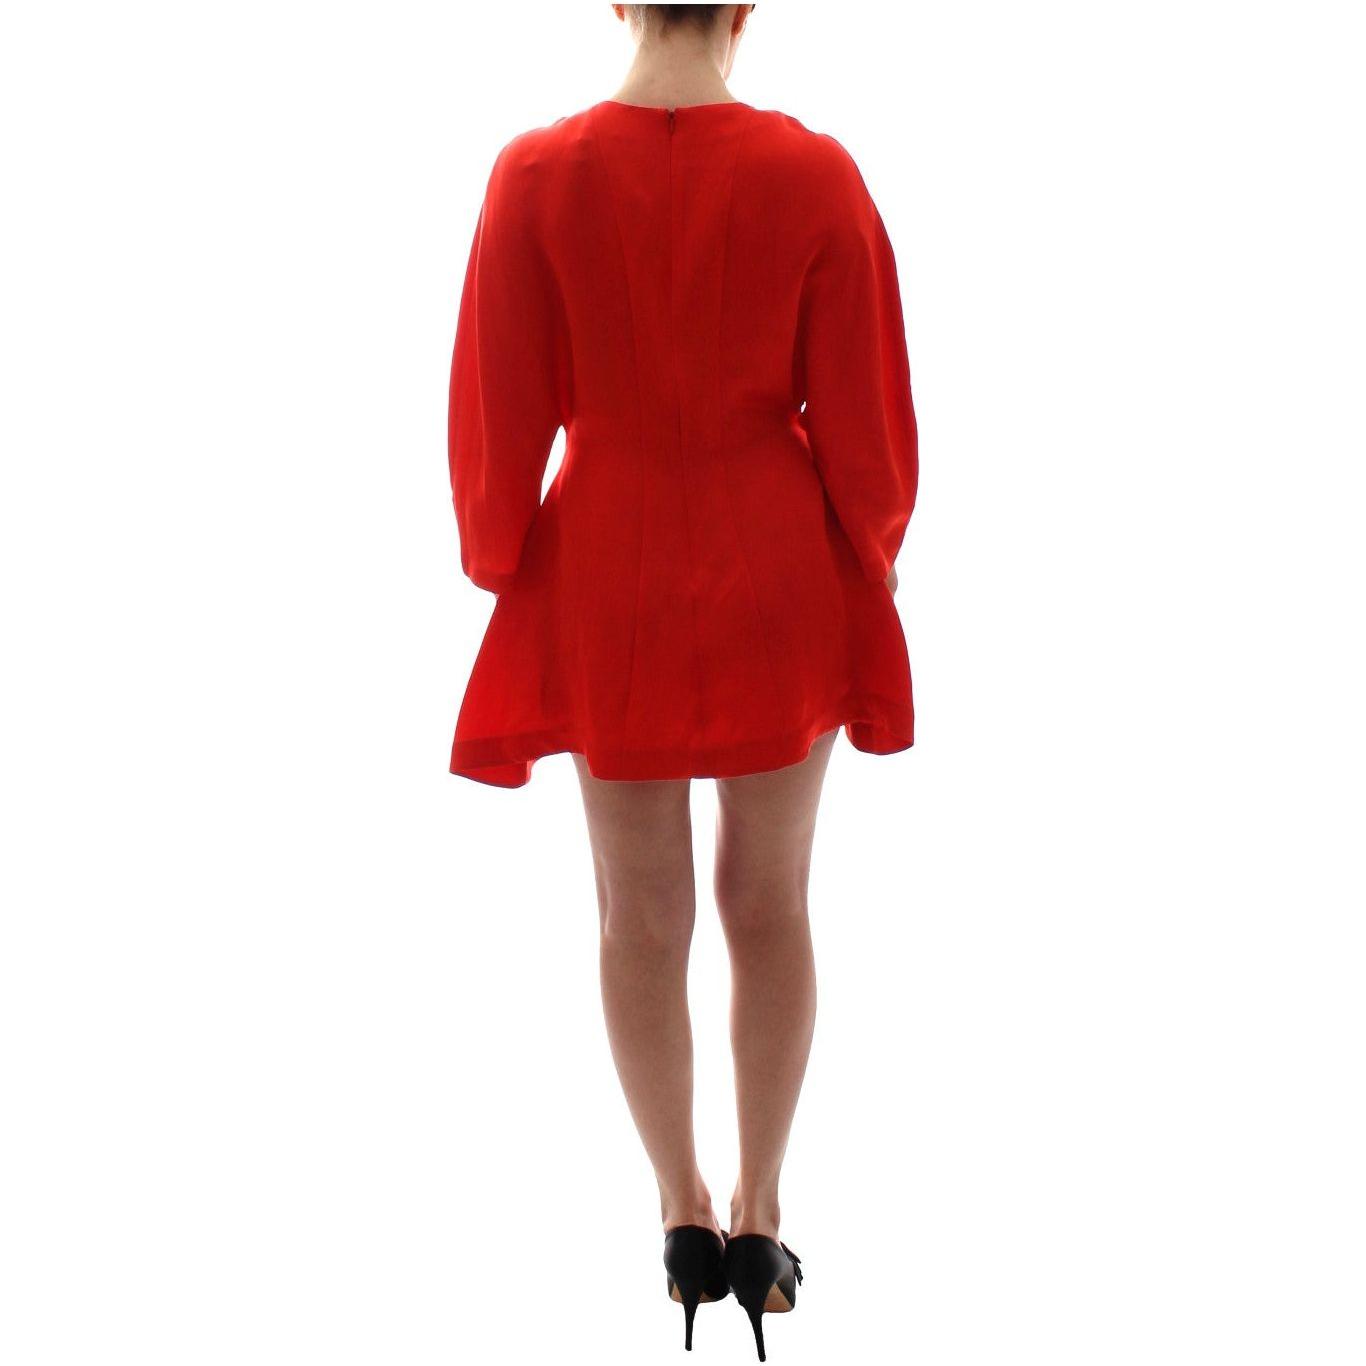 Fyodor Golan Radiant Red Linen Blend Artisan Dress red-mini-linen-3-4-sleeve-sheath-dress 185328-red-mini-linen-34-sleeve-sheath-dress-2.jpg